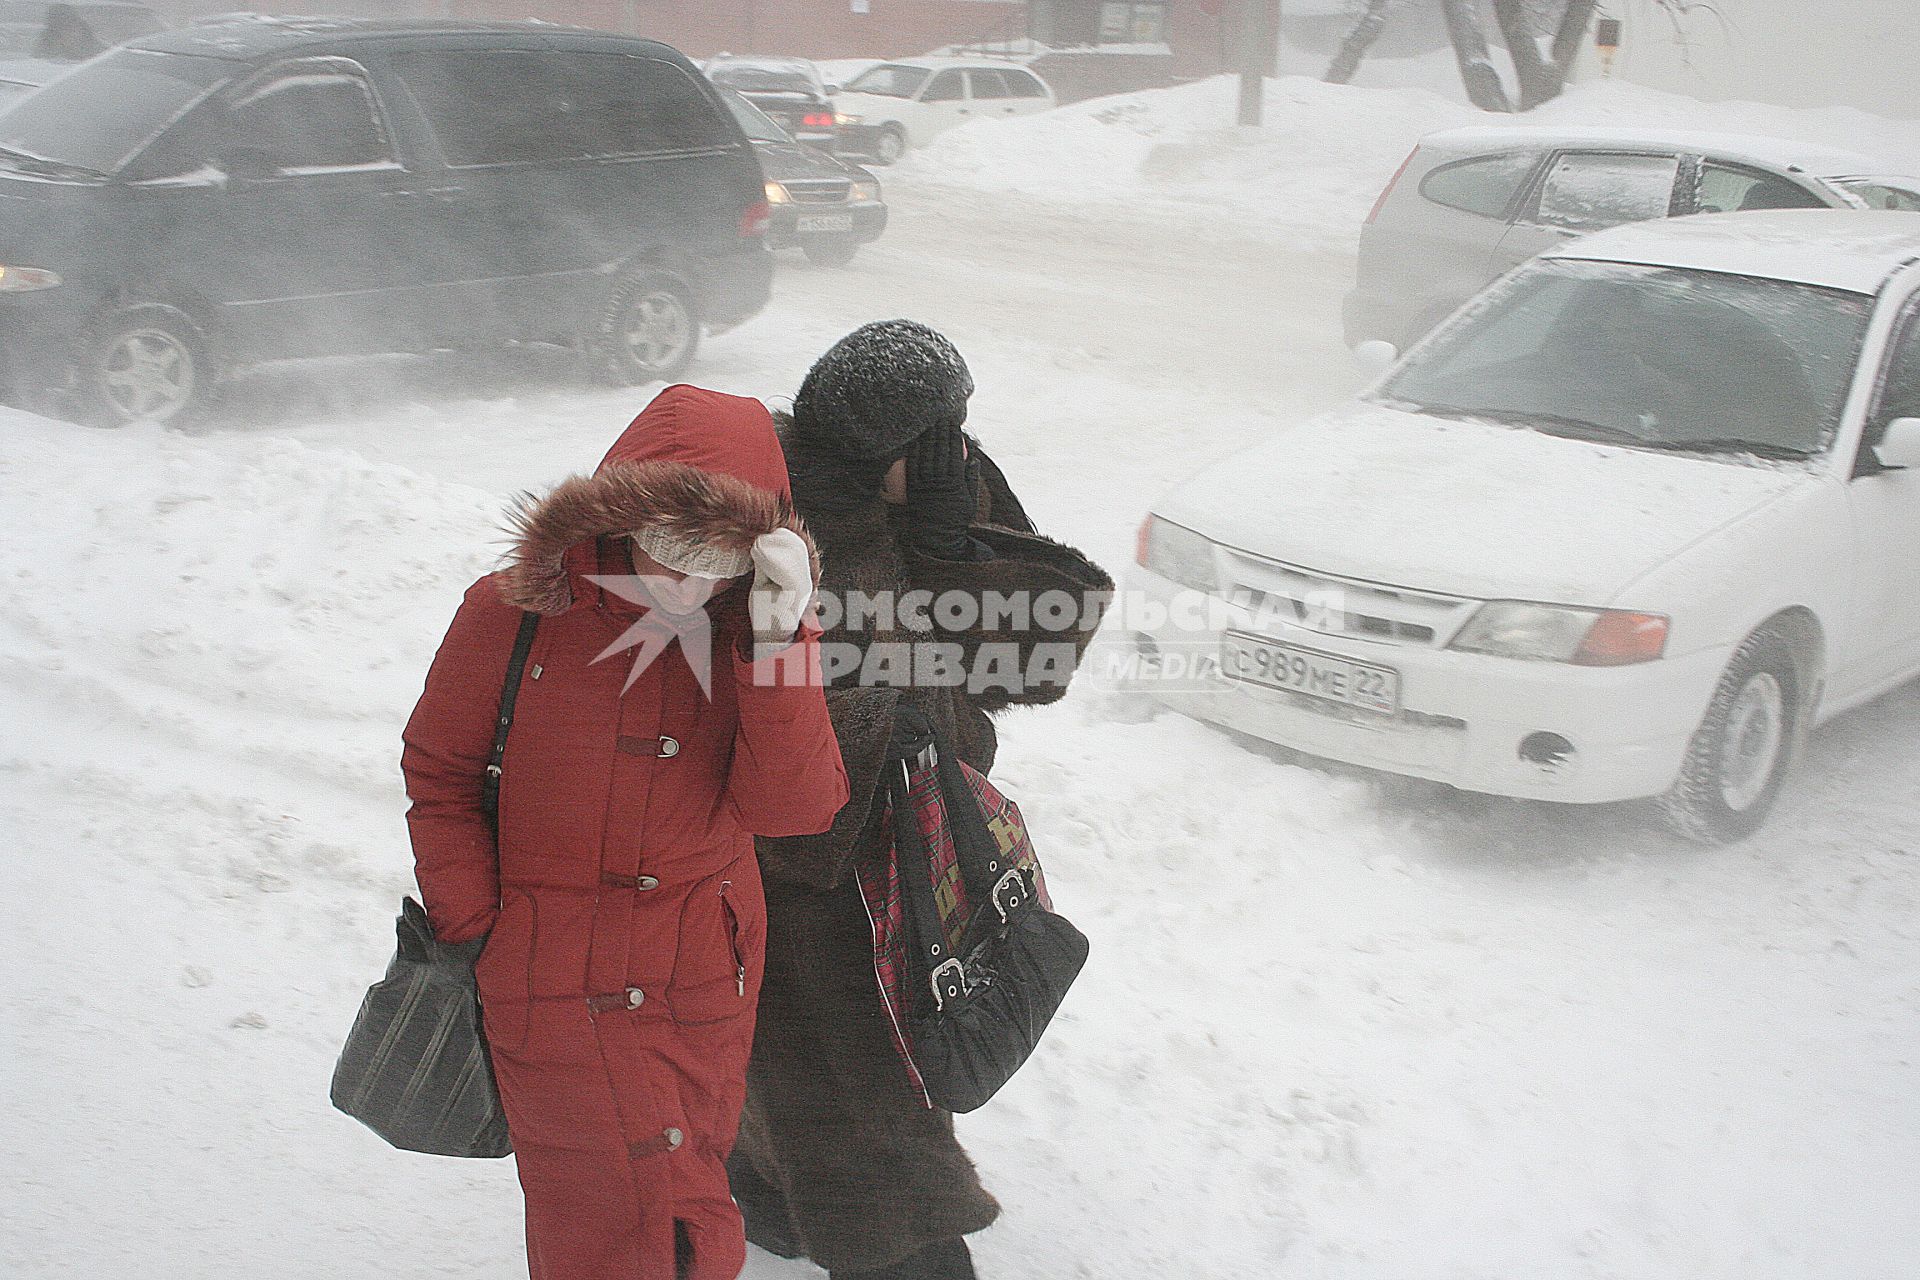 Метель, девушки идут по улице прикрывая лицо от снега.